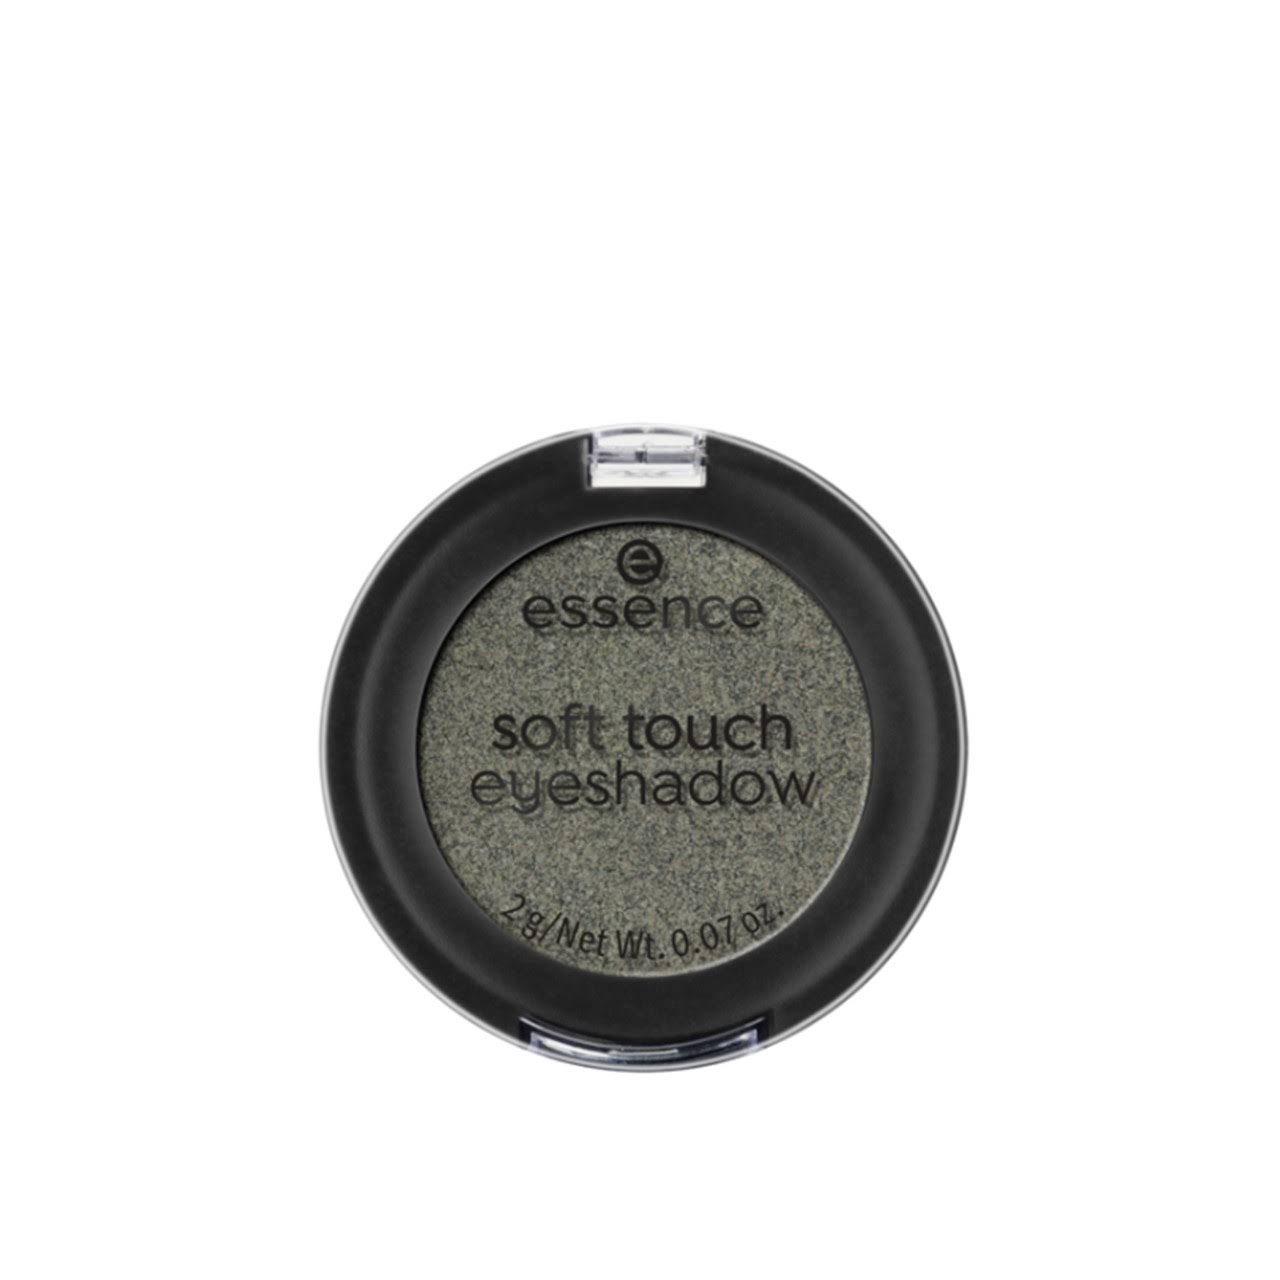 Essence Soft Touch Eyeshadow Shade 05 2 G